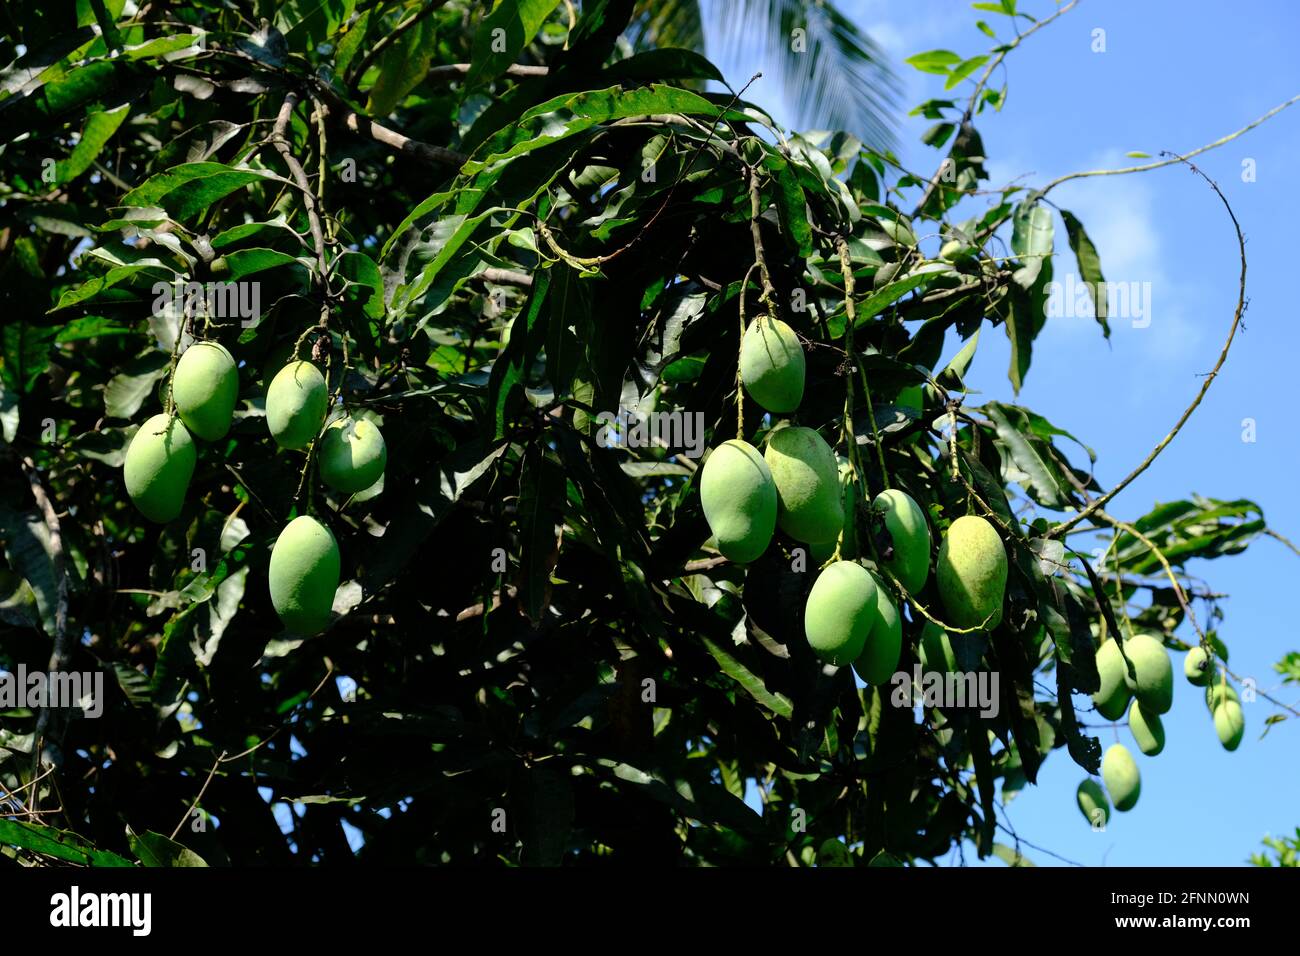 Indonesia Anambas Islands - Mango tree with fruits - Mangifera indica Stock Photo